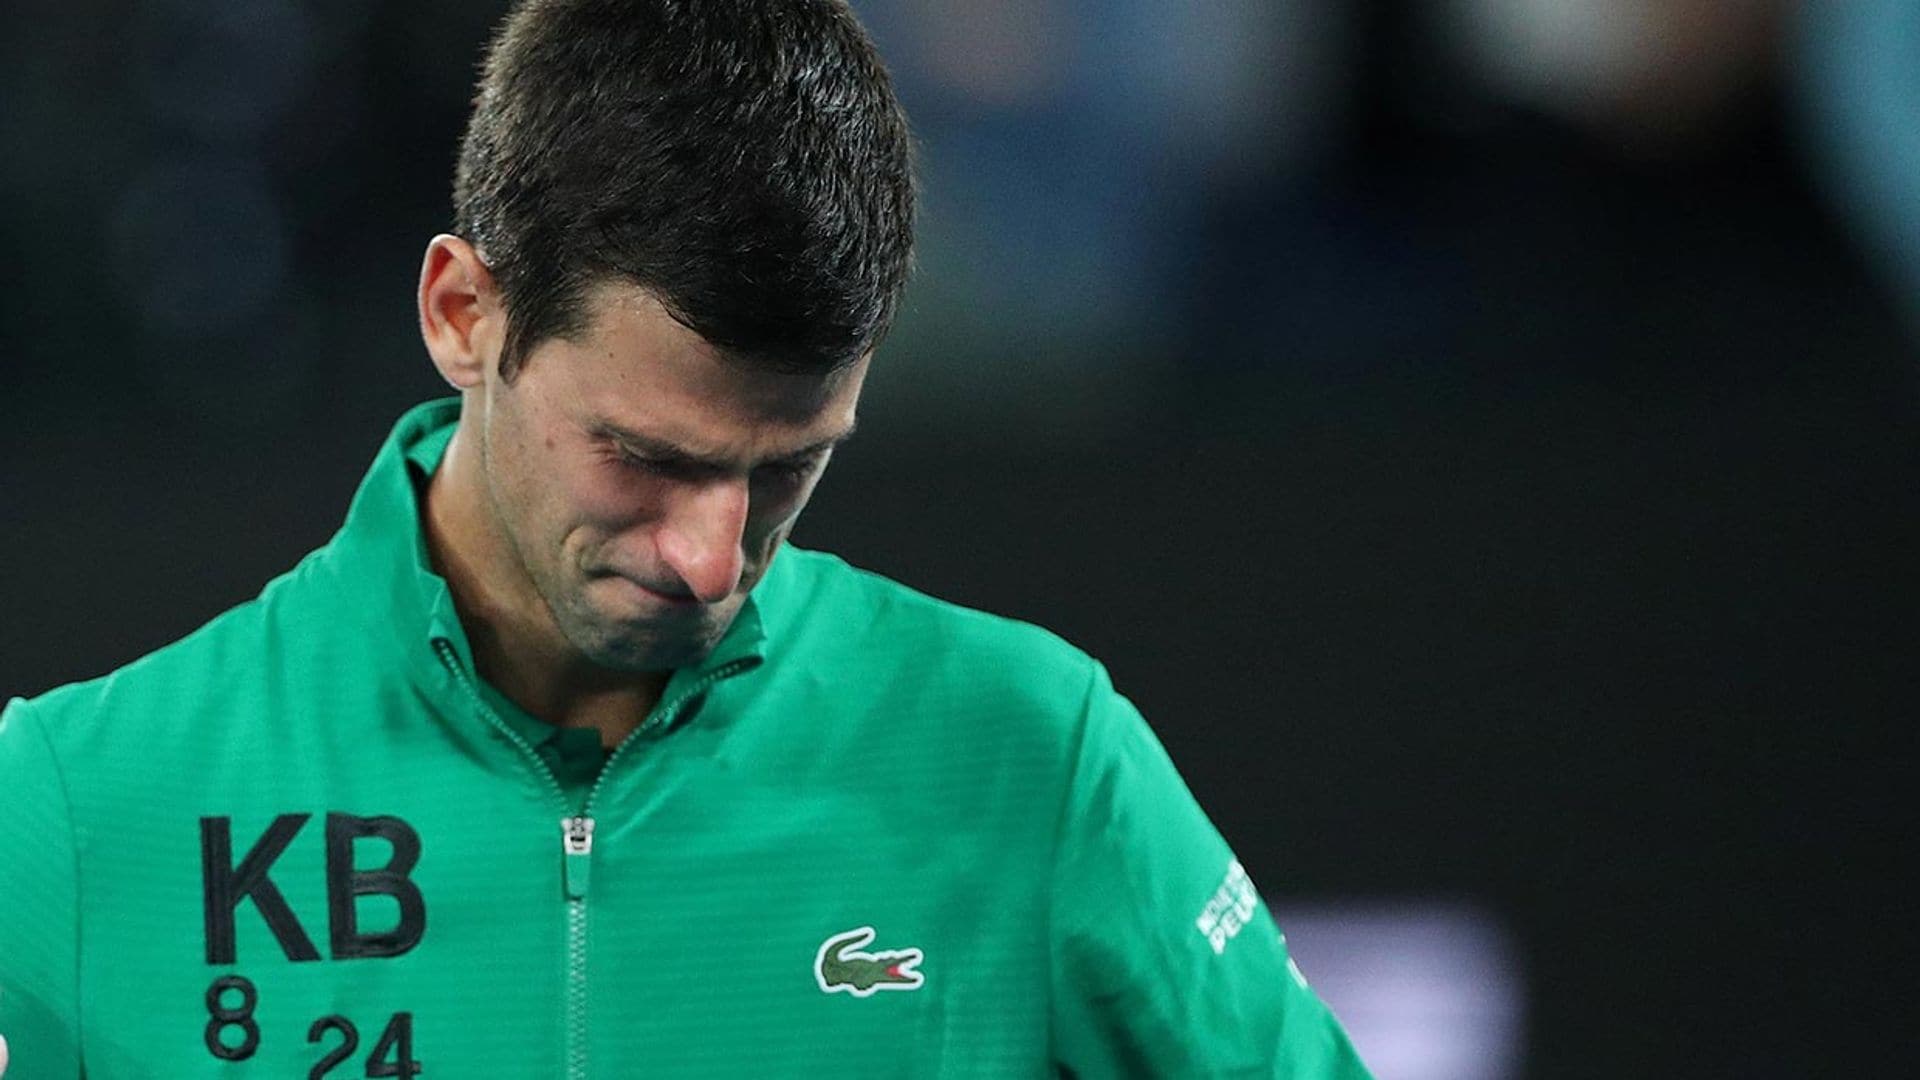 Una sudadera en su honor y un mar de lágrimas, Novak Djokovic recuerda en la pista a Kobe Bryant